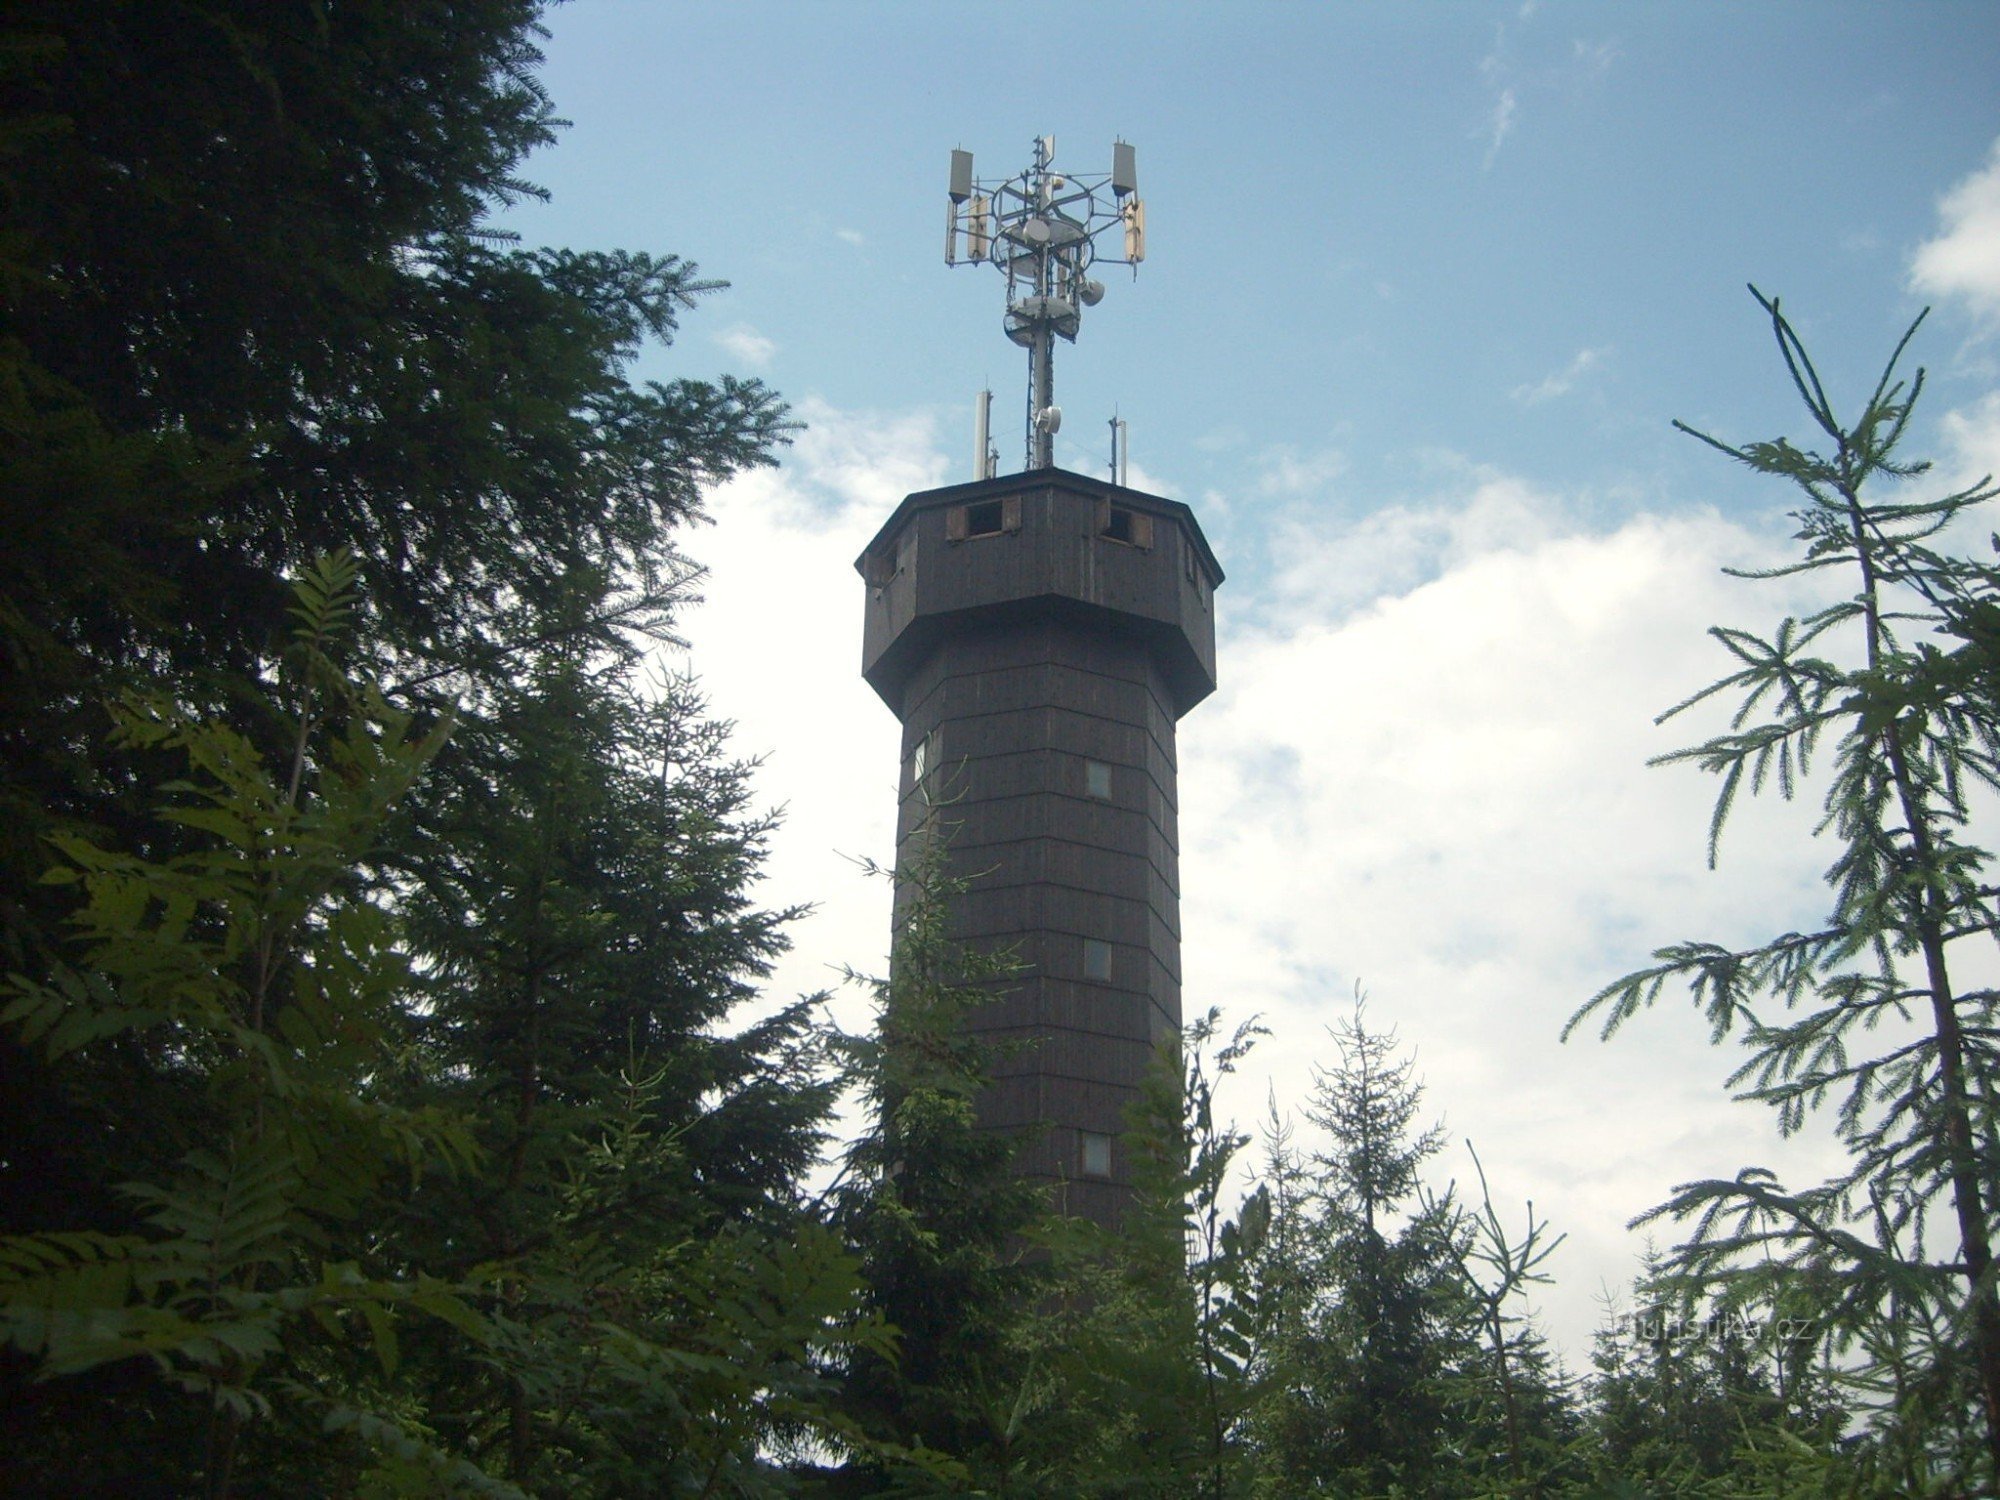 torre de telecomunicações com torre de observação